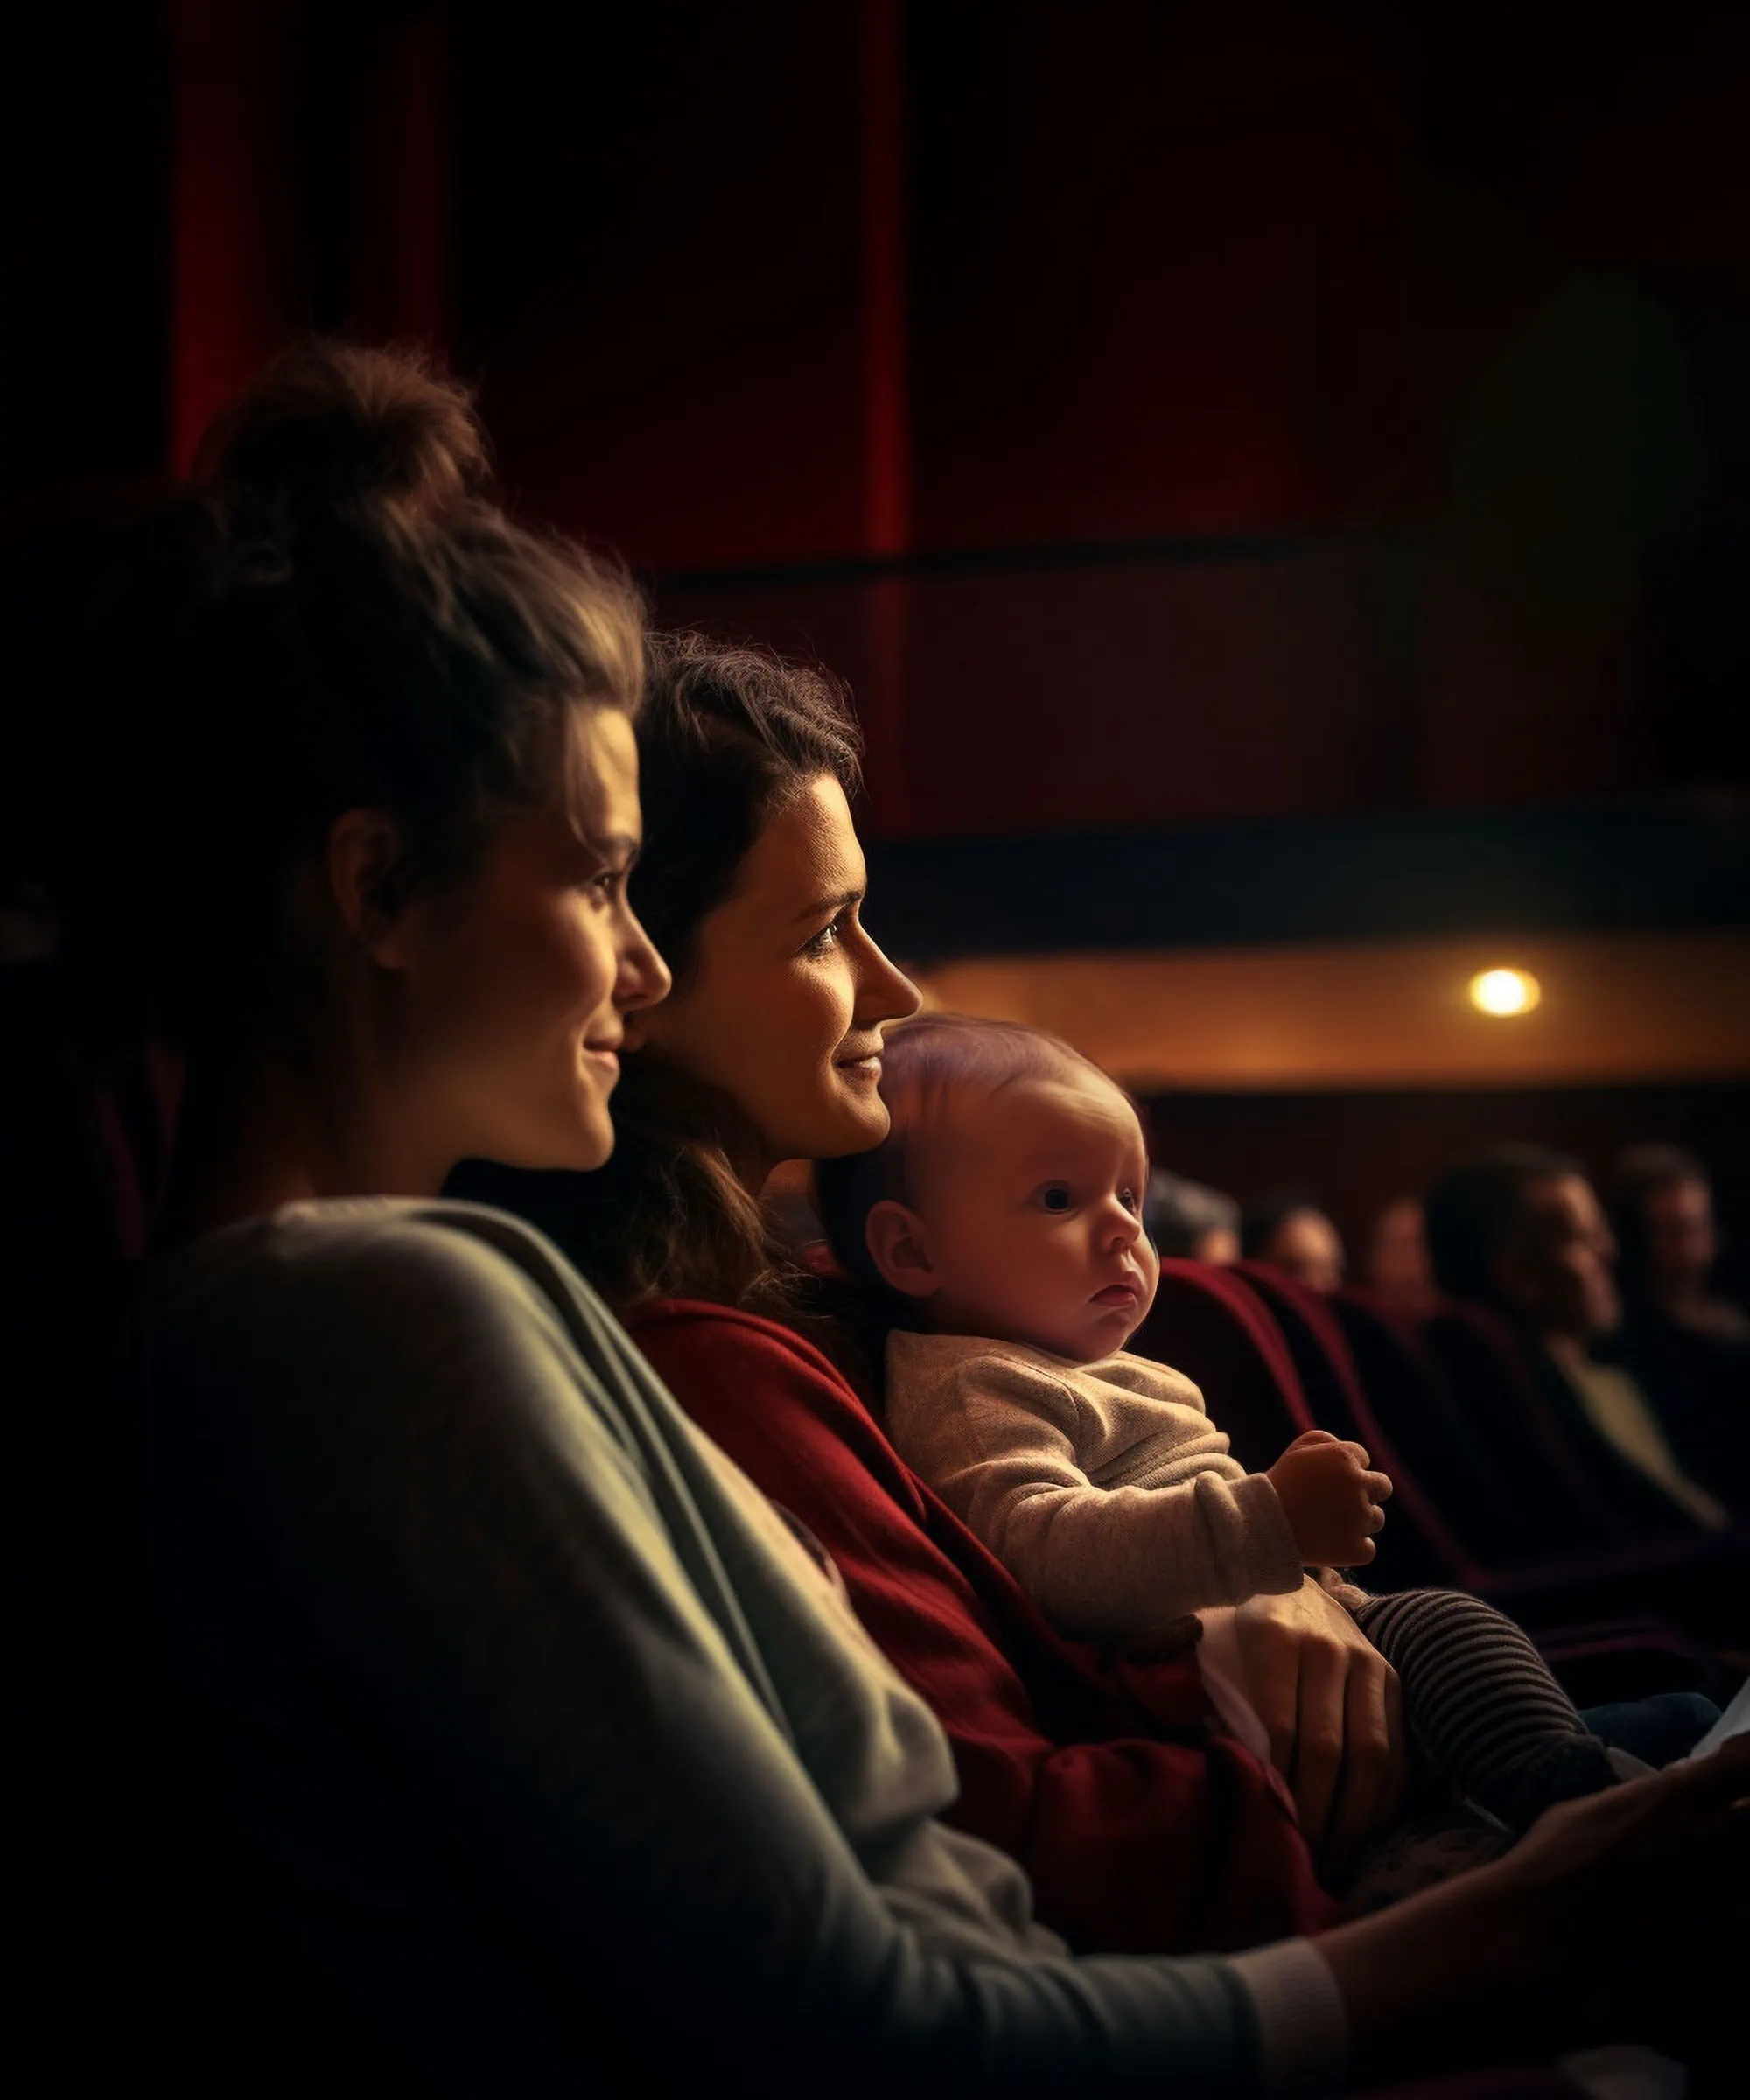 Elternkino Mit Baby: Cineplex Berlin // Himbeer